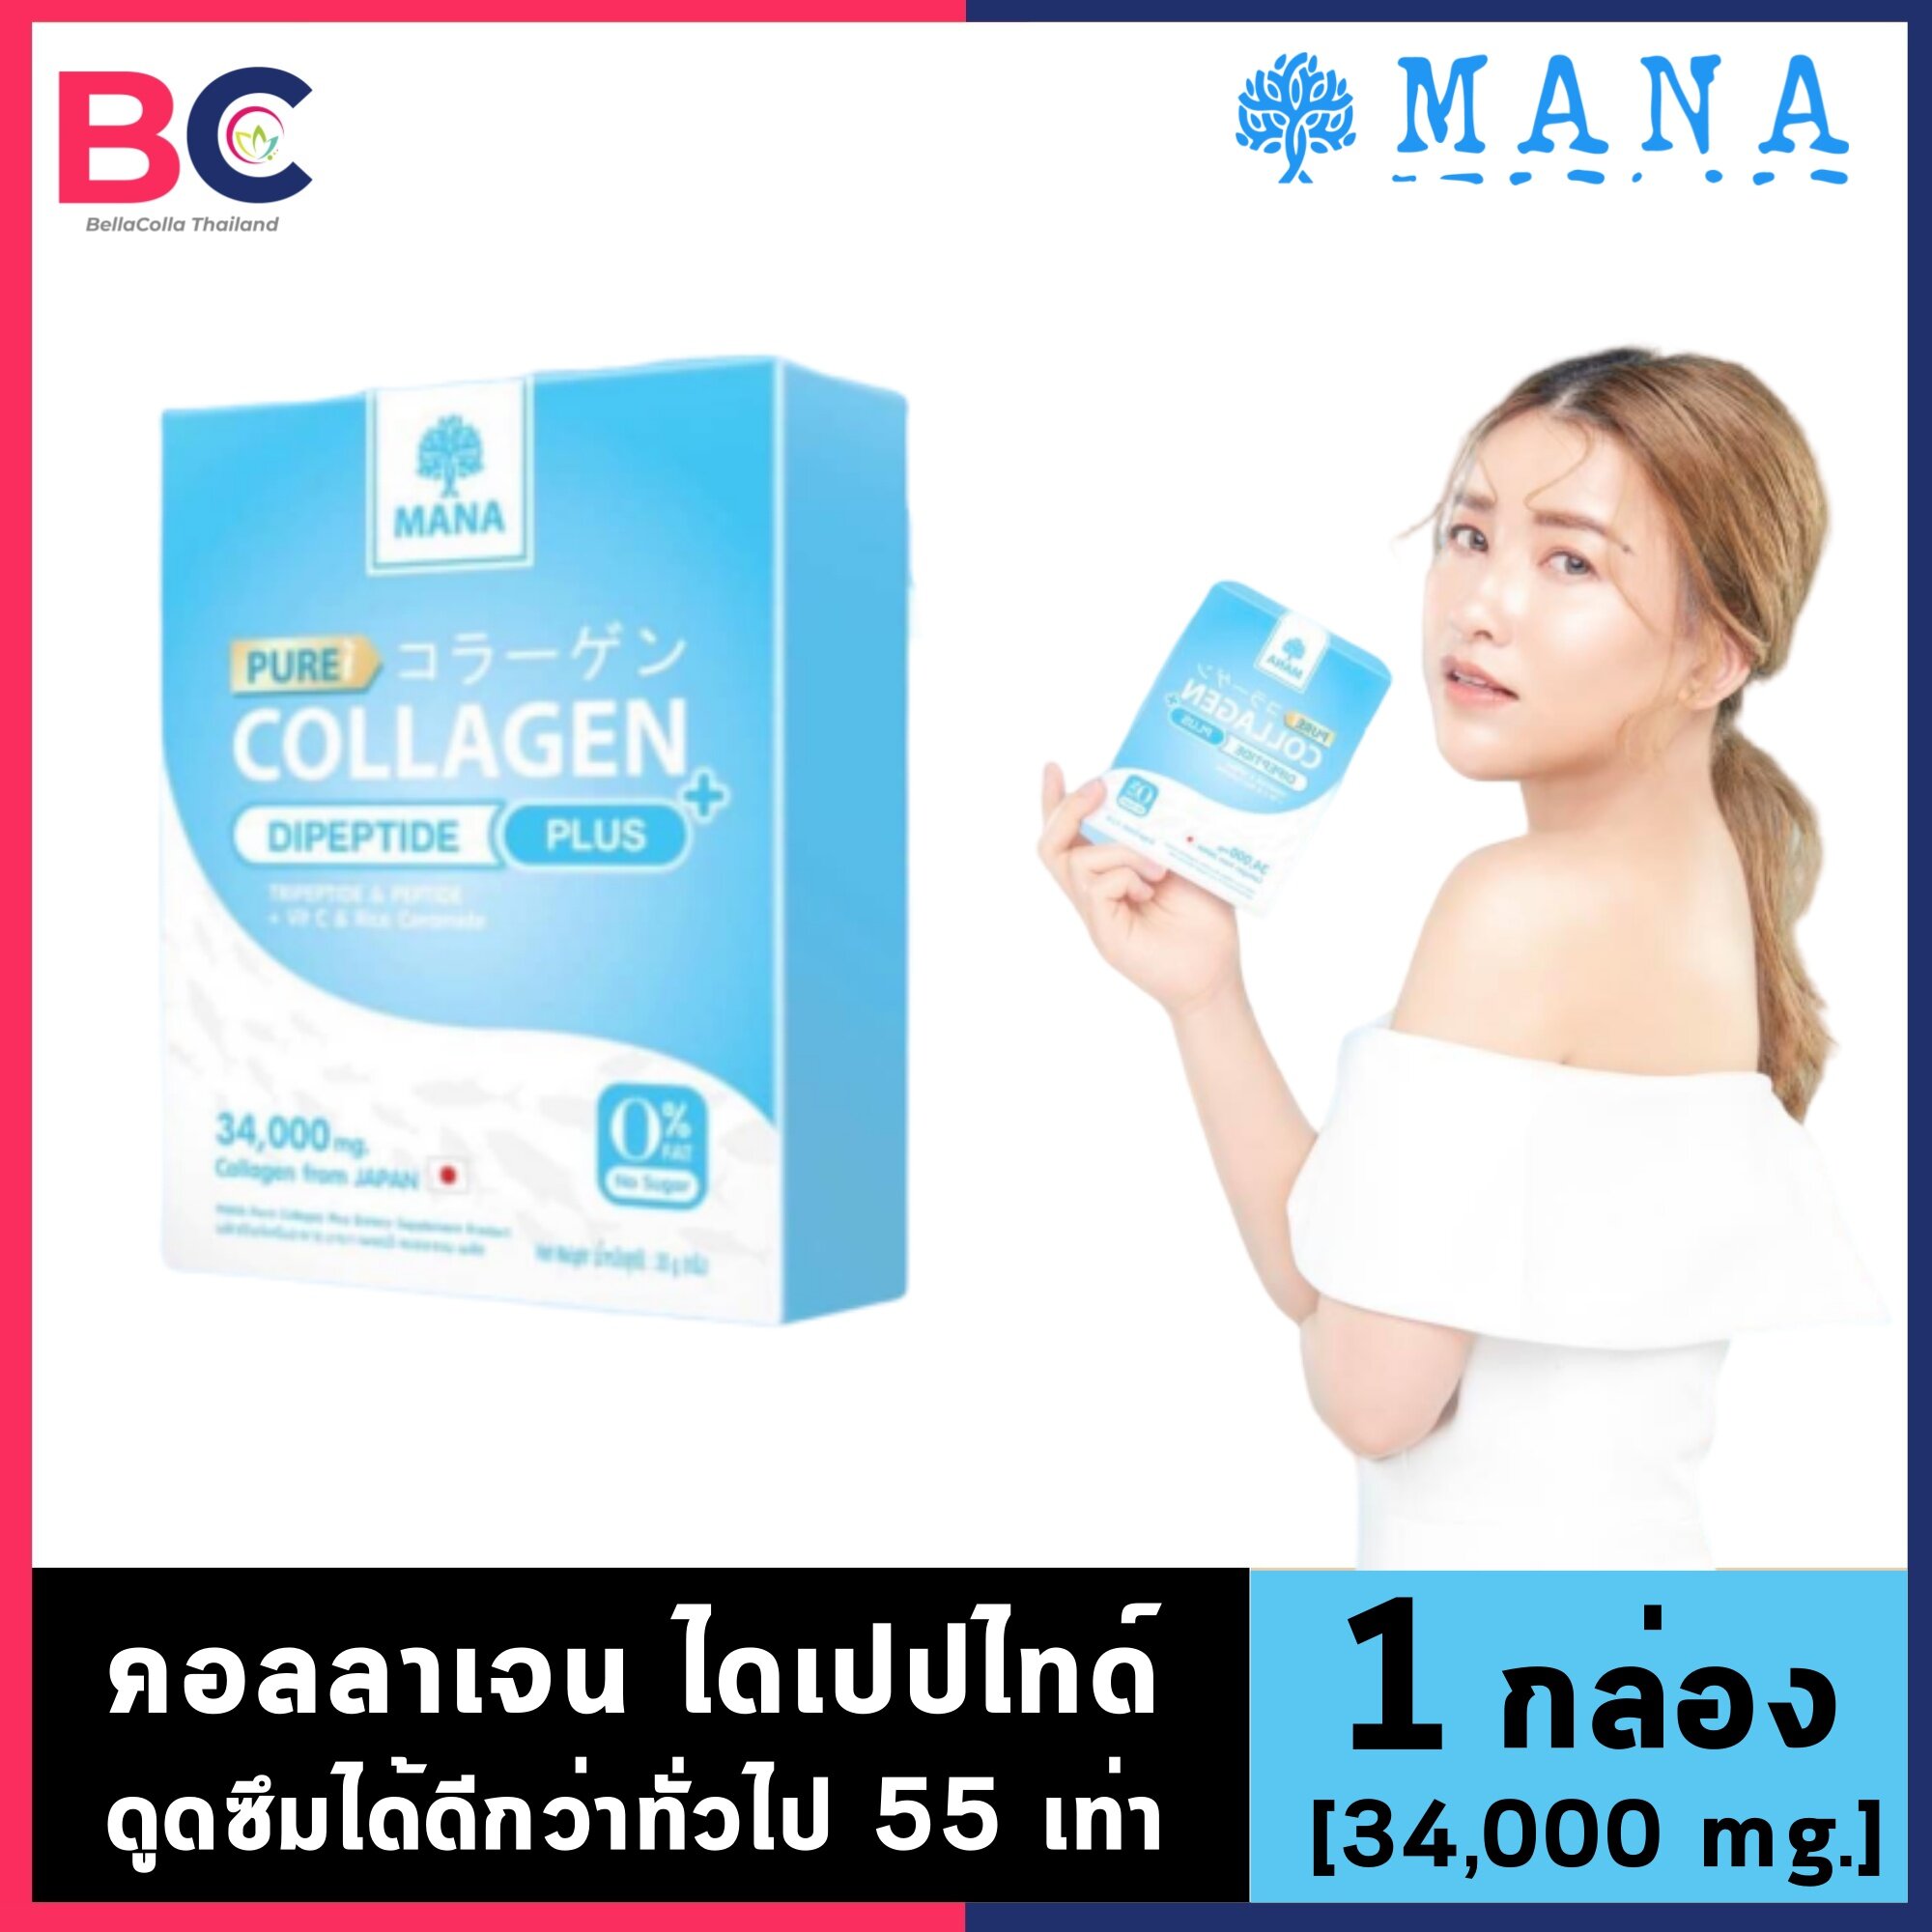 มานา คอลลาเจน [1 กล่อง] [34,000 มิลลิกรัม] Mana Collagen คอลลาเจนแบบชง คอลลาเจนเพียว คอลลาเจน mana by BellaColla Thailand